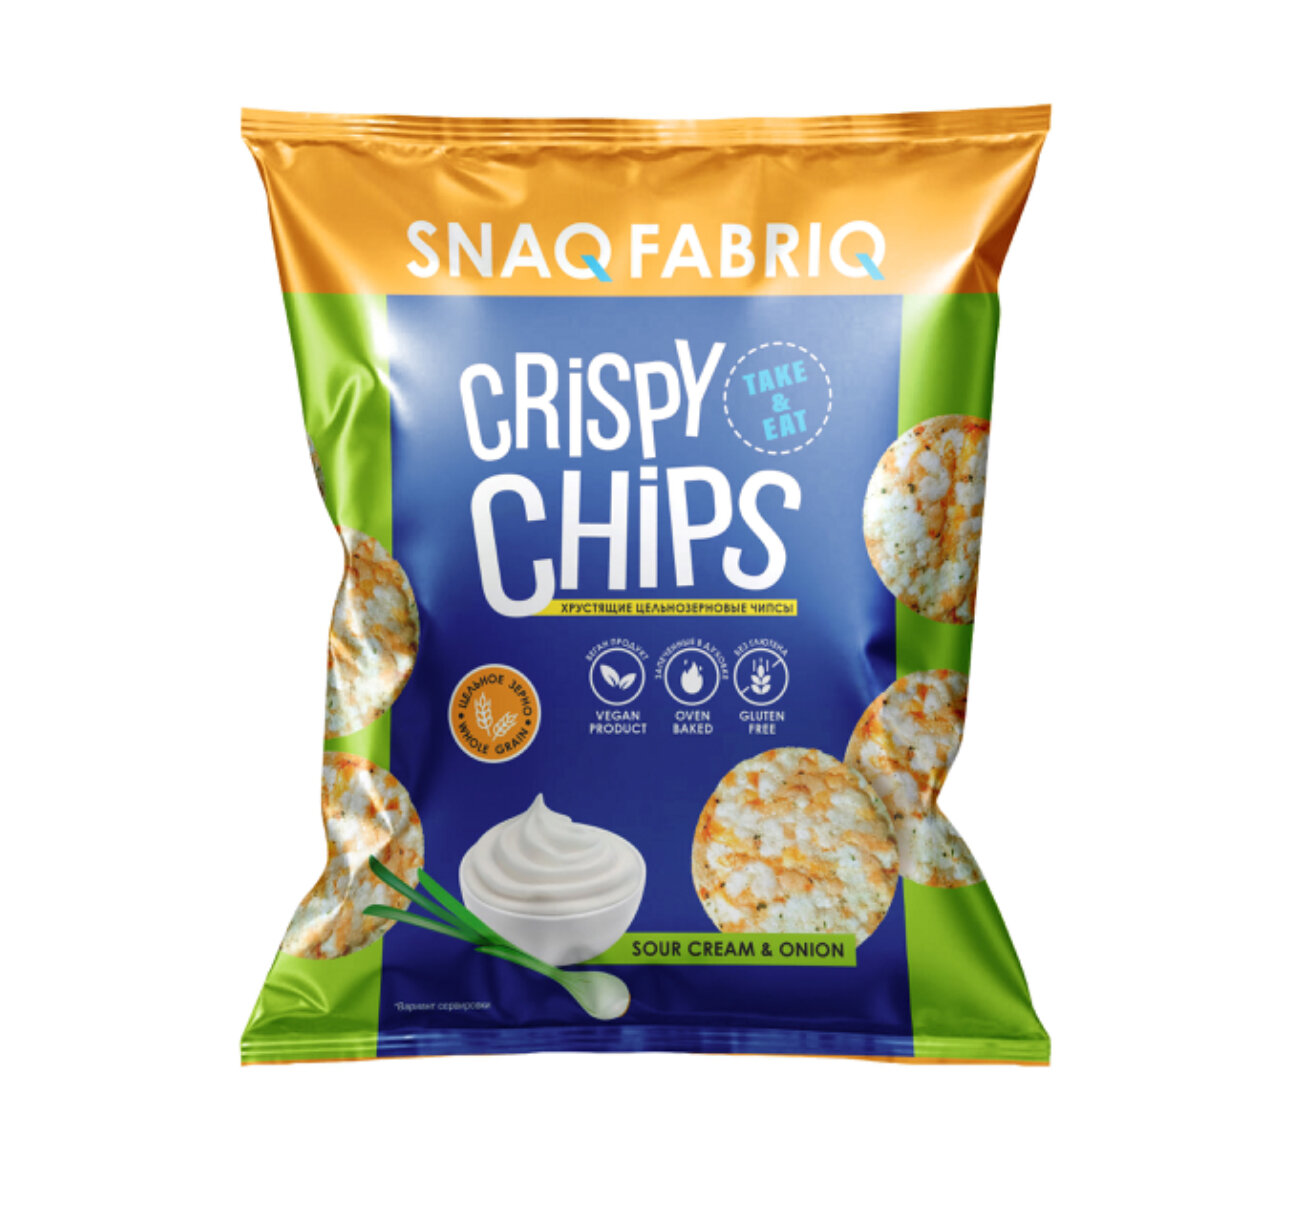 Чипсы Snaq Fabriq Crispy Chips рисовые цельнозерновые, лук-сметана, 50 г, в заказе 4 пачки